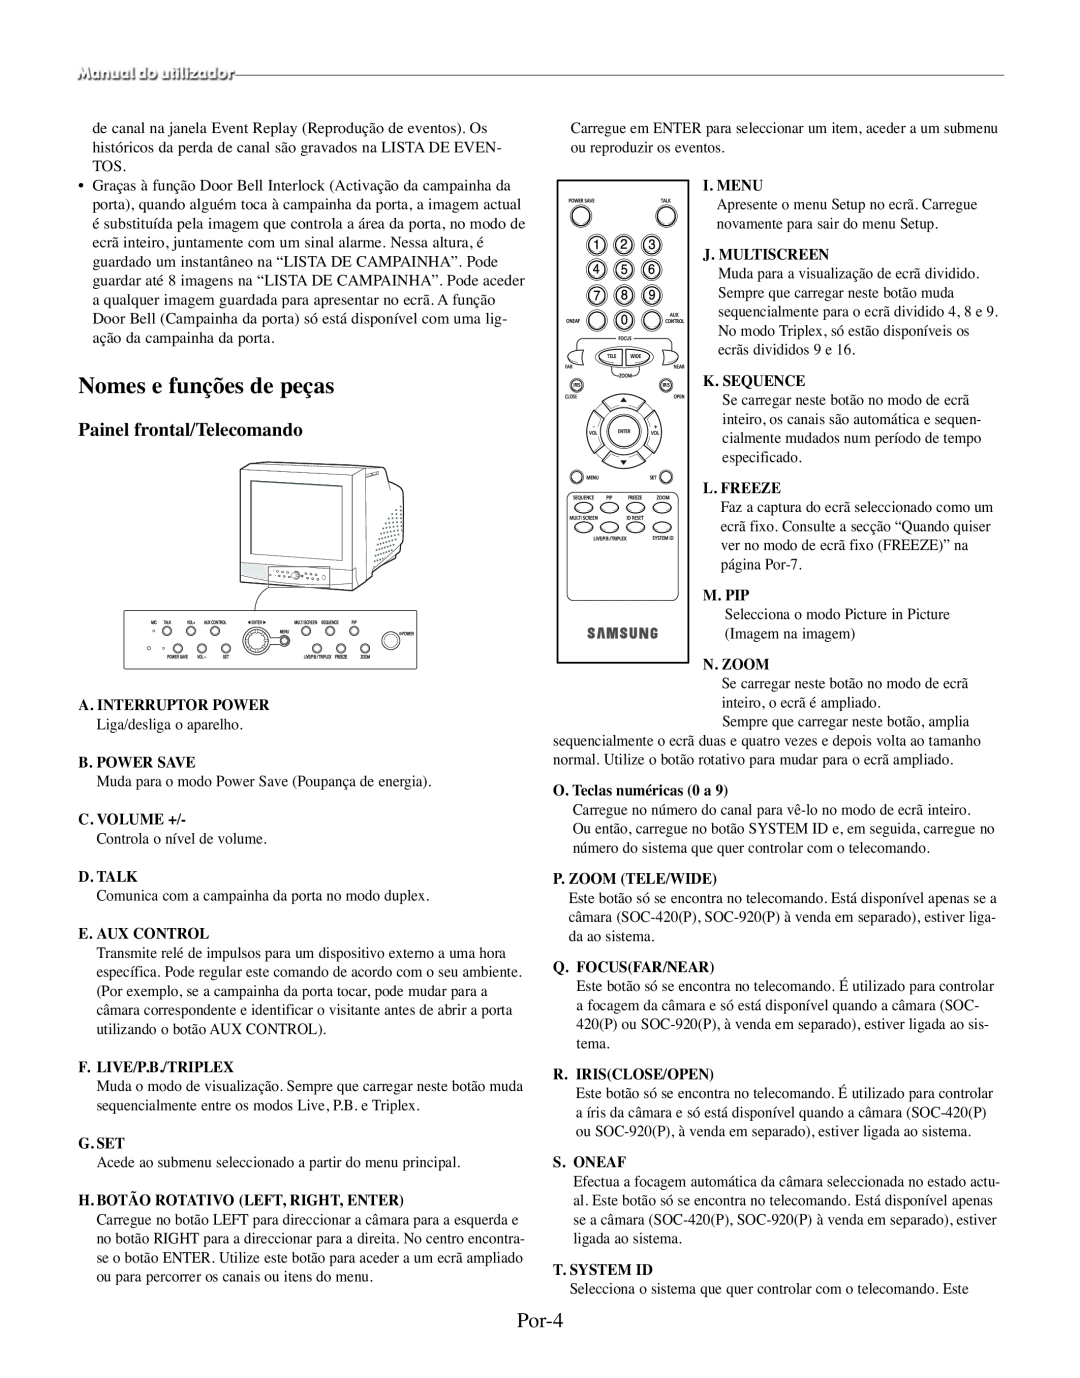 Samsung SMO-210MP/UMG Nomes e funções de peças, Por-4, Painel frontal/Telecomando, A. Interruptor Power, B. Power Save 